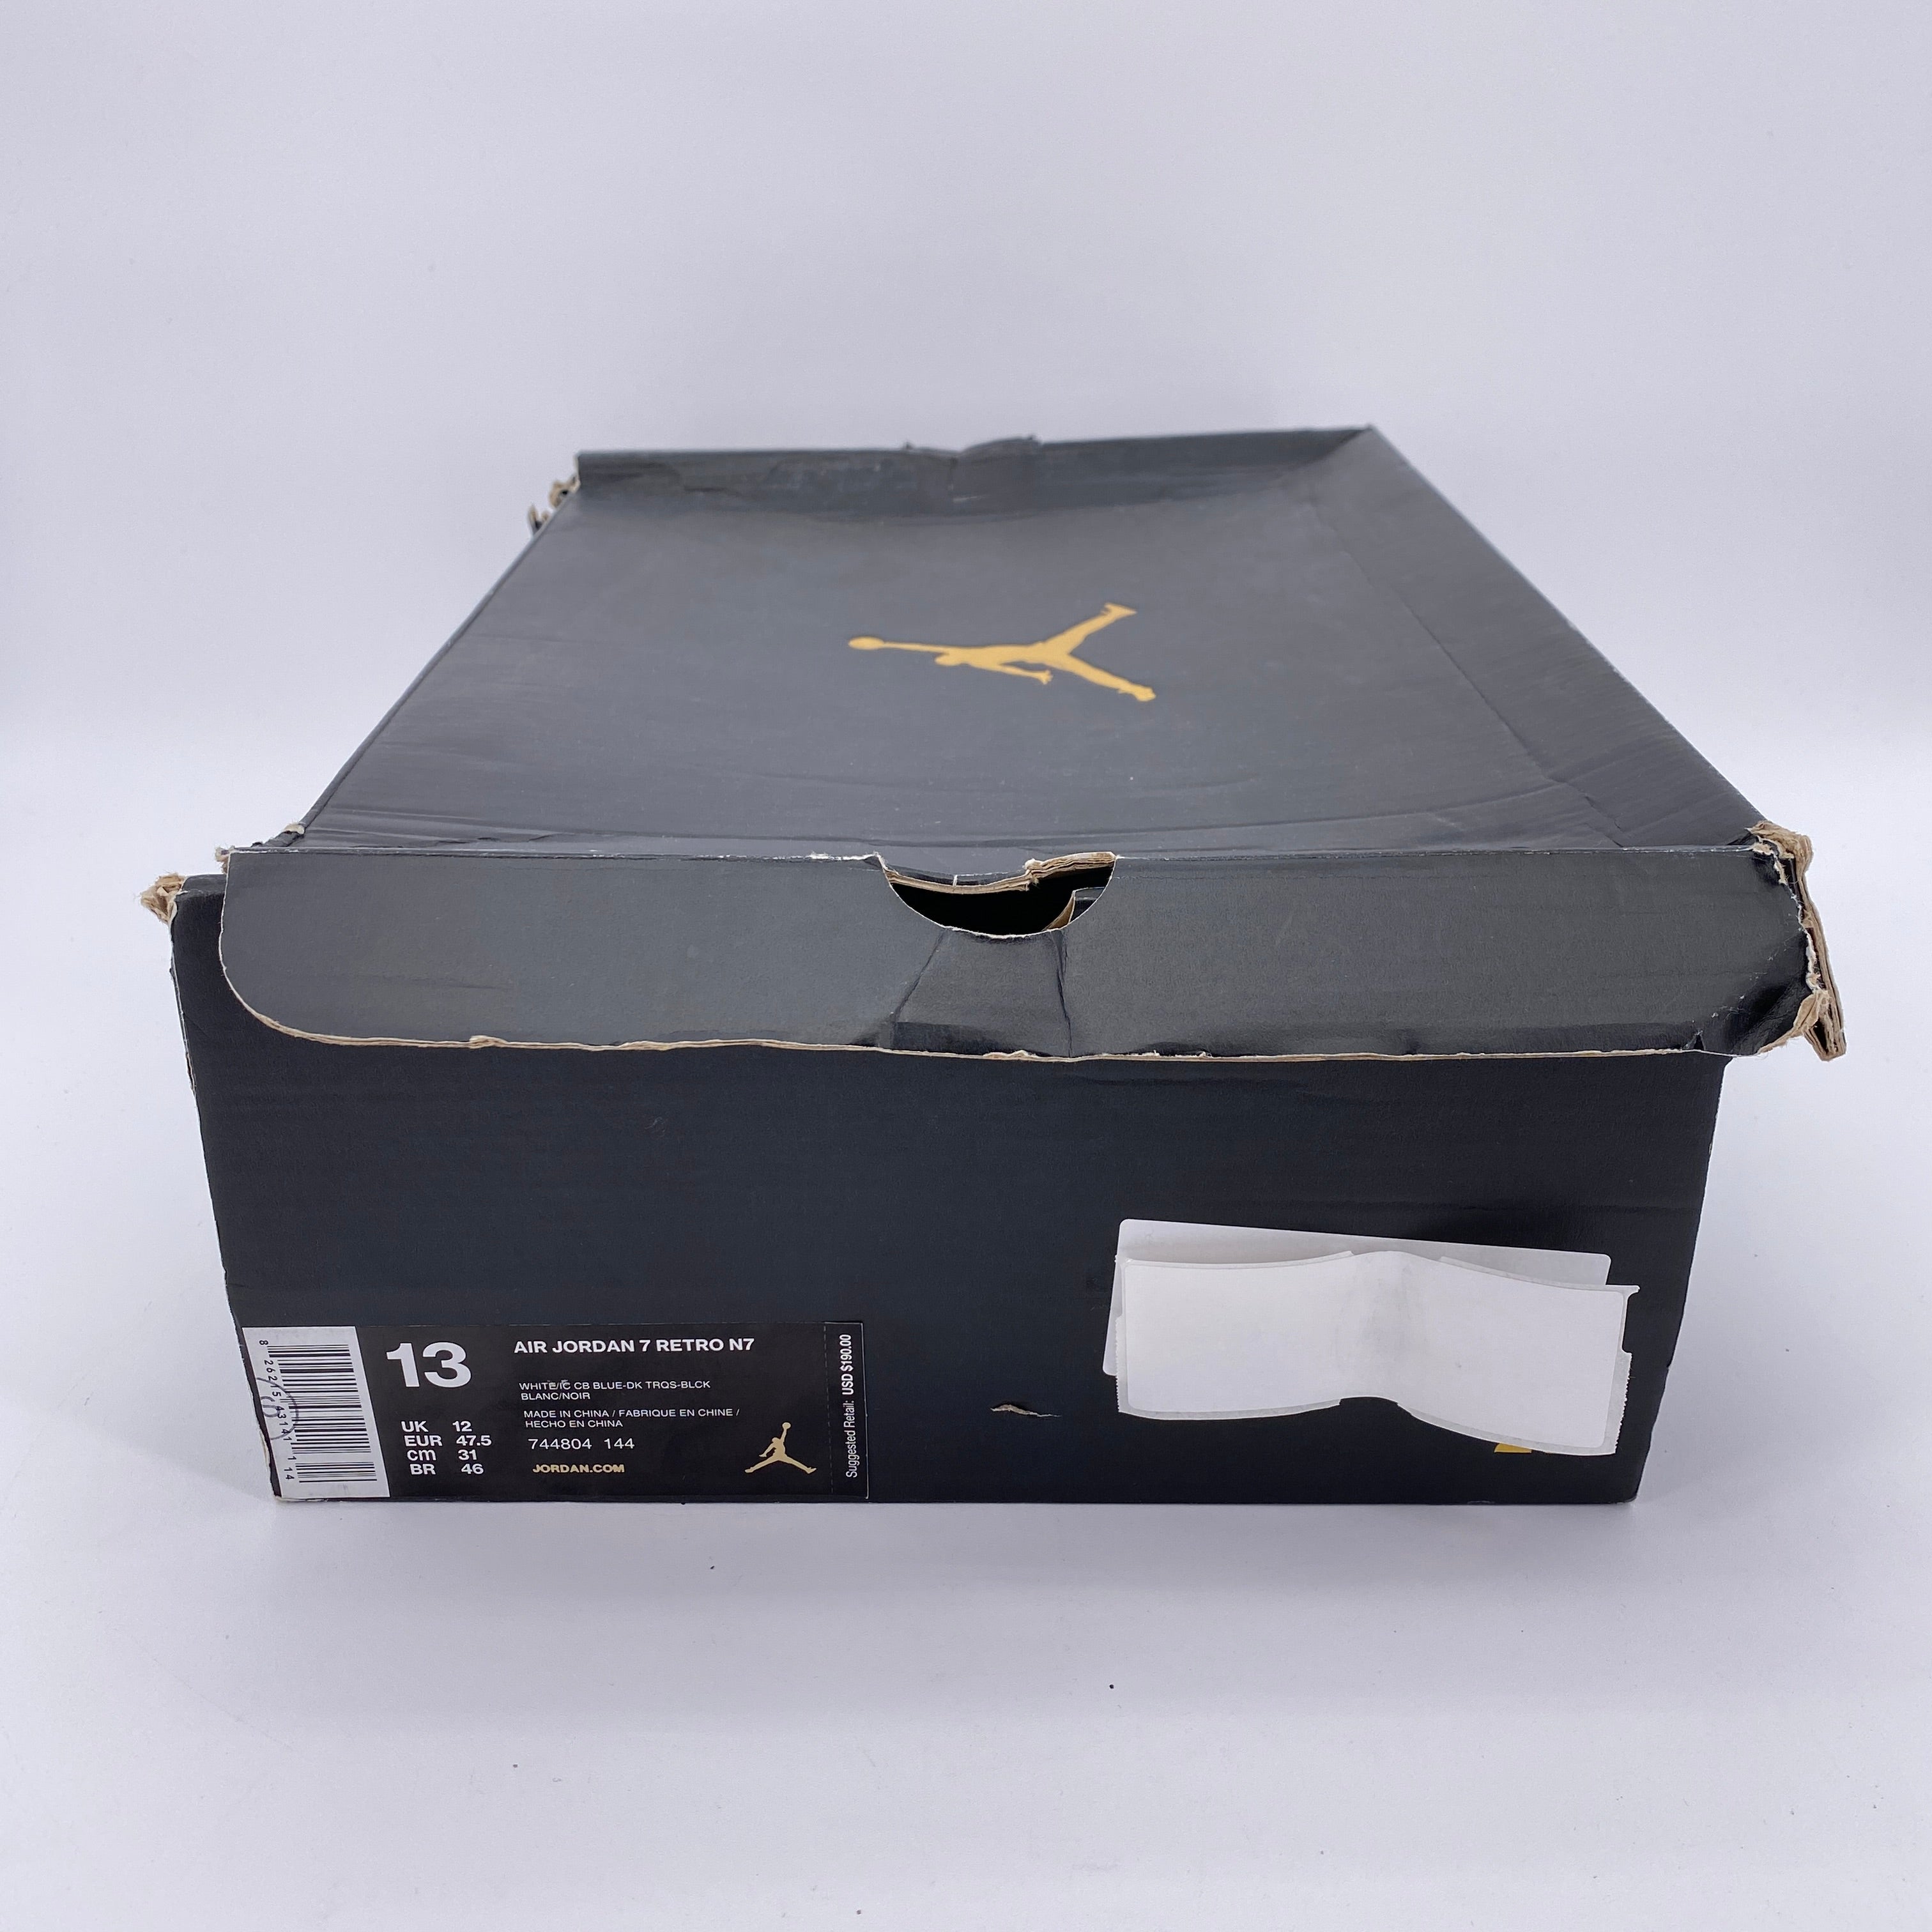 Air Jordan 7 Retro &quot;N7&quot; 2015 New Size 13